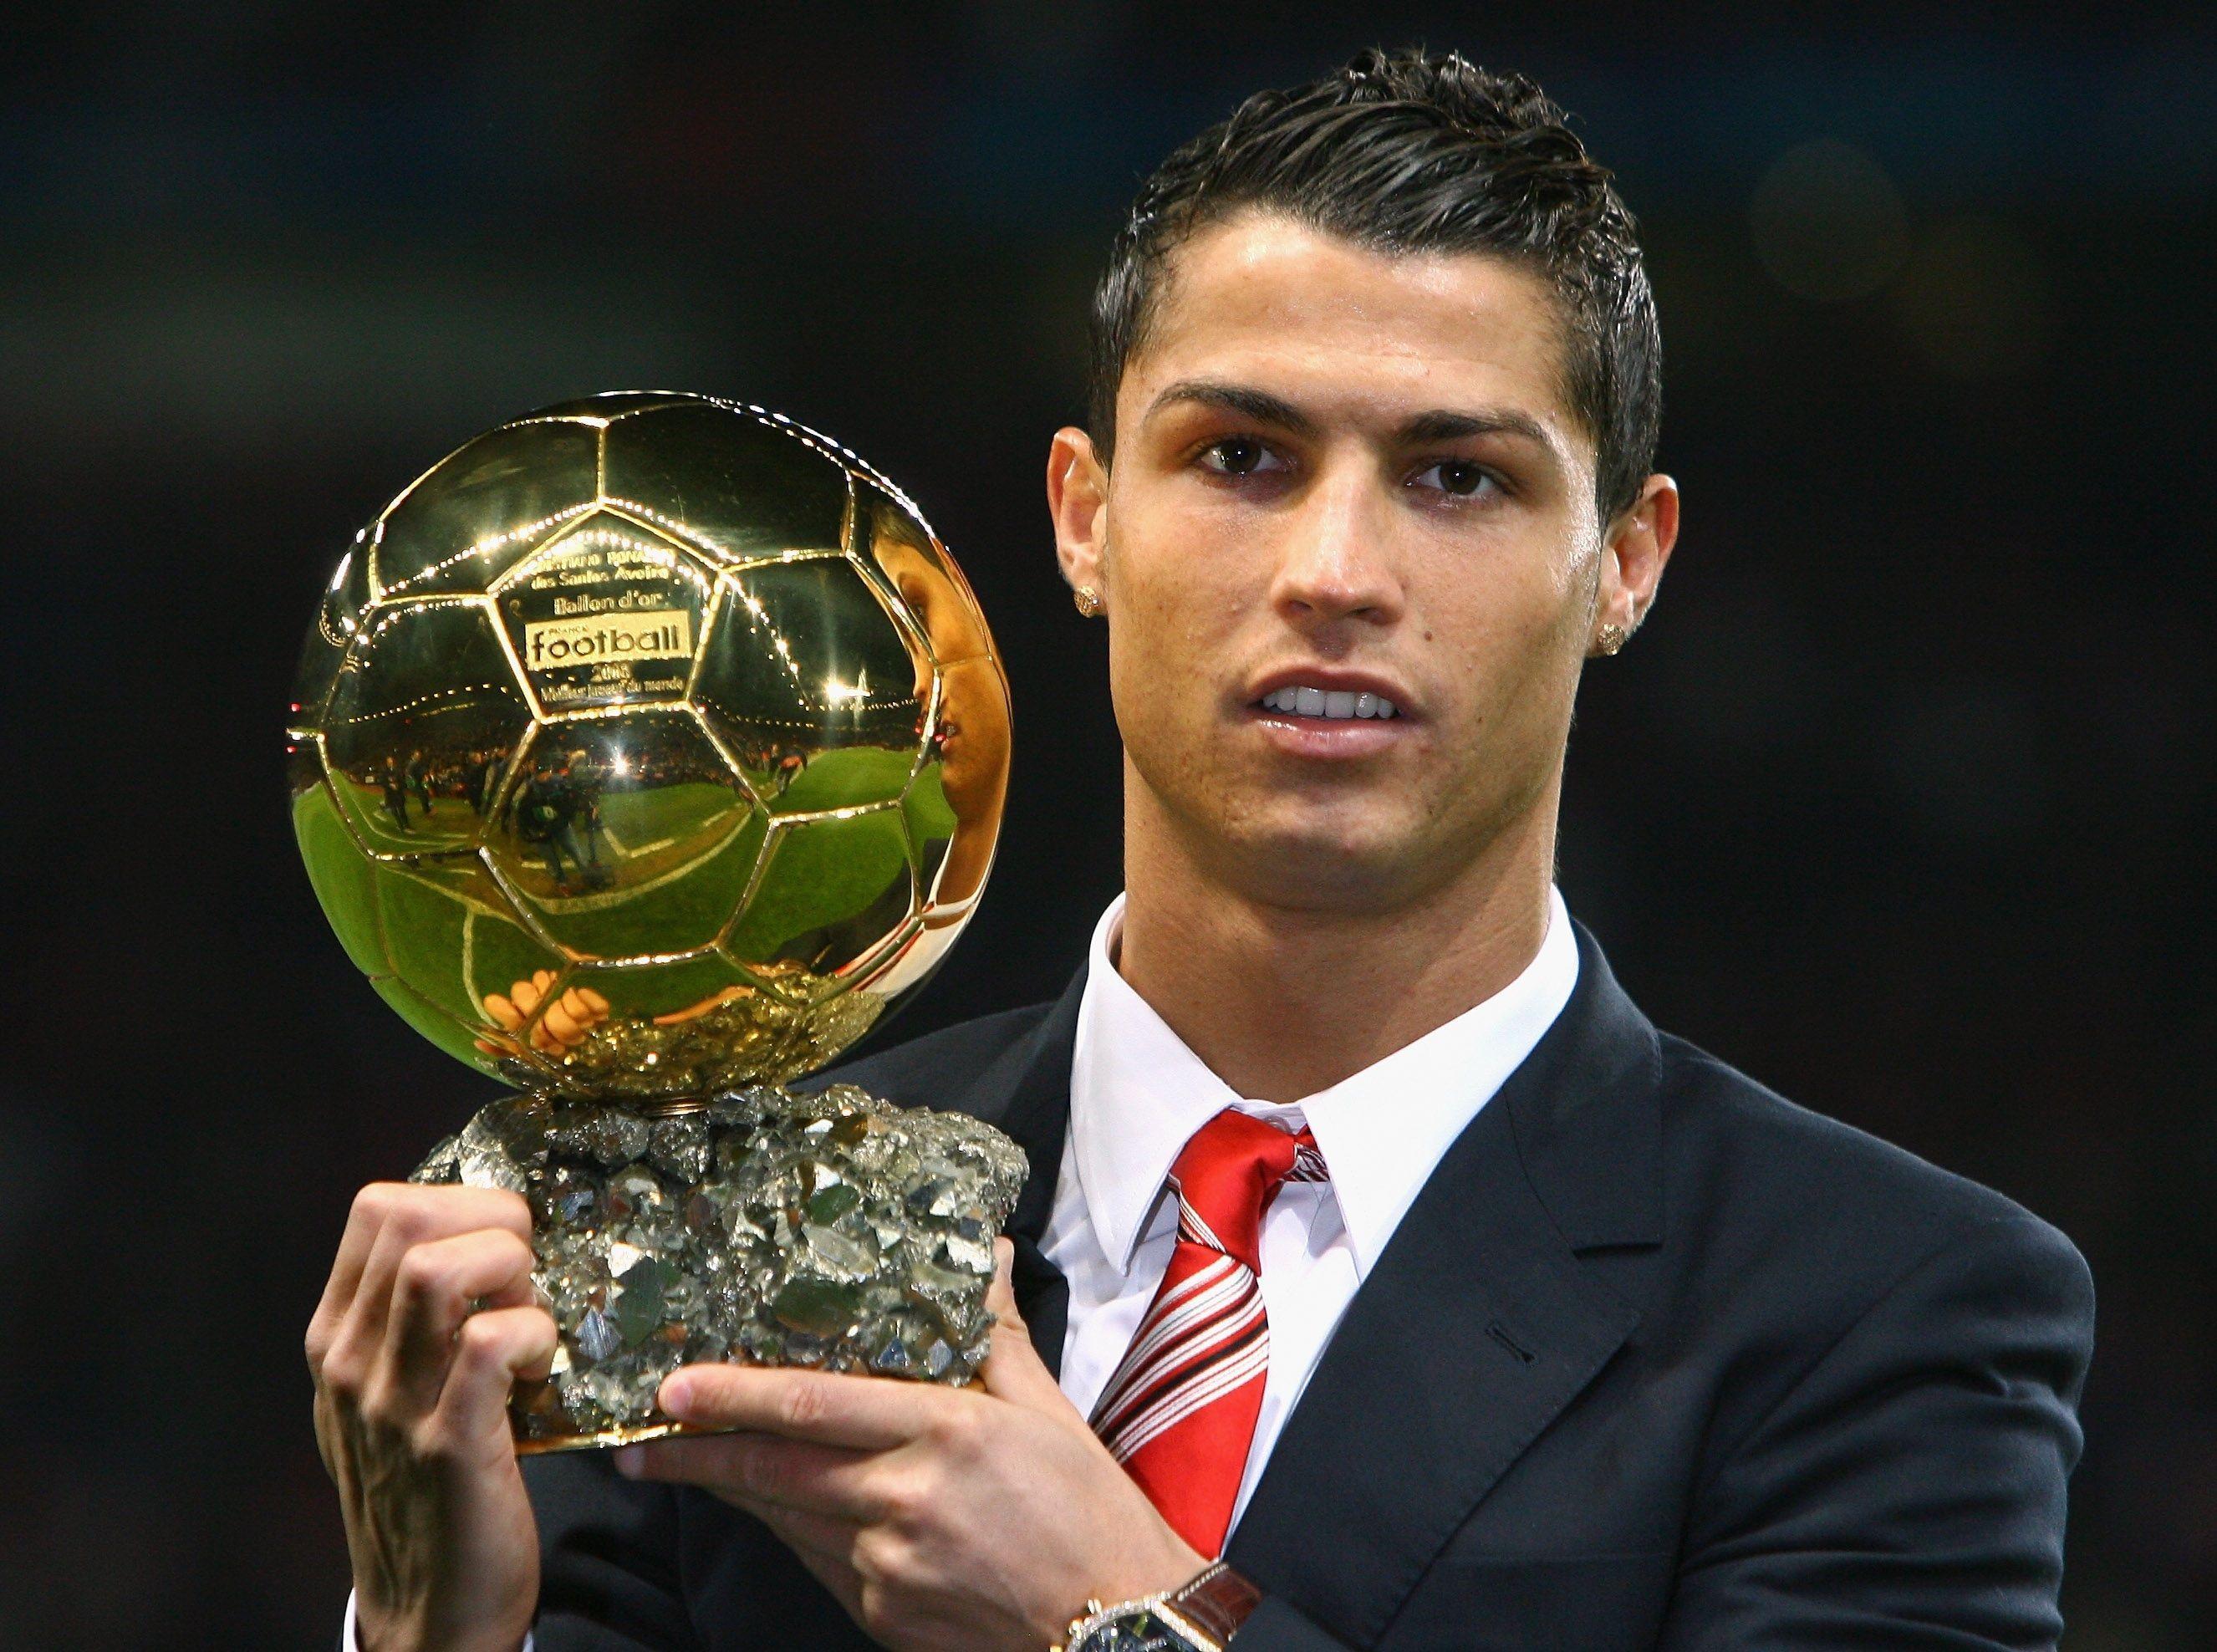 Cristiano ronaldo cr7 FIFA ballon d&;or 2013 football soccer